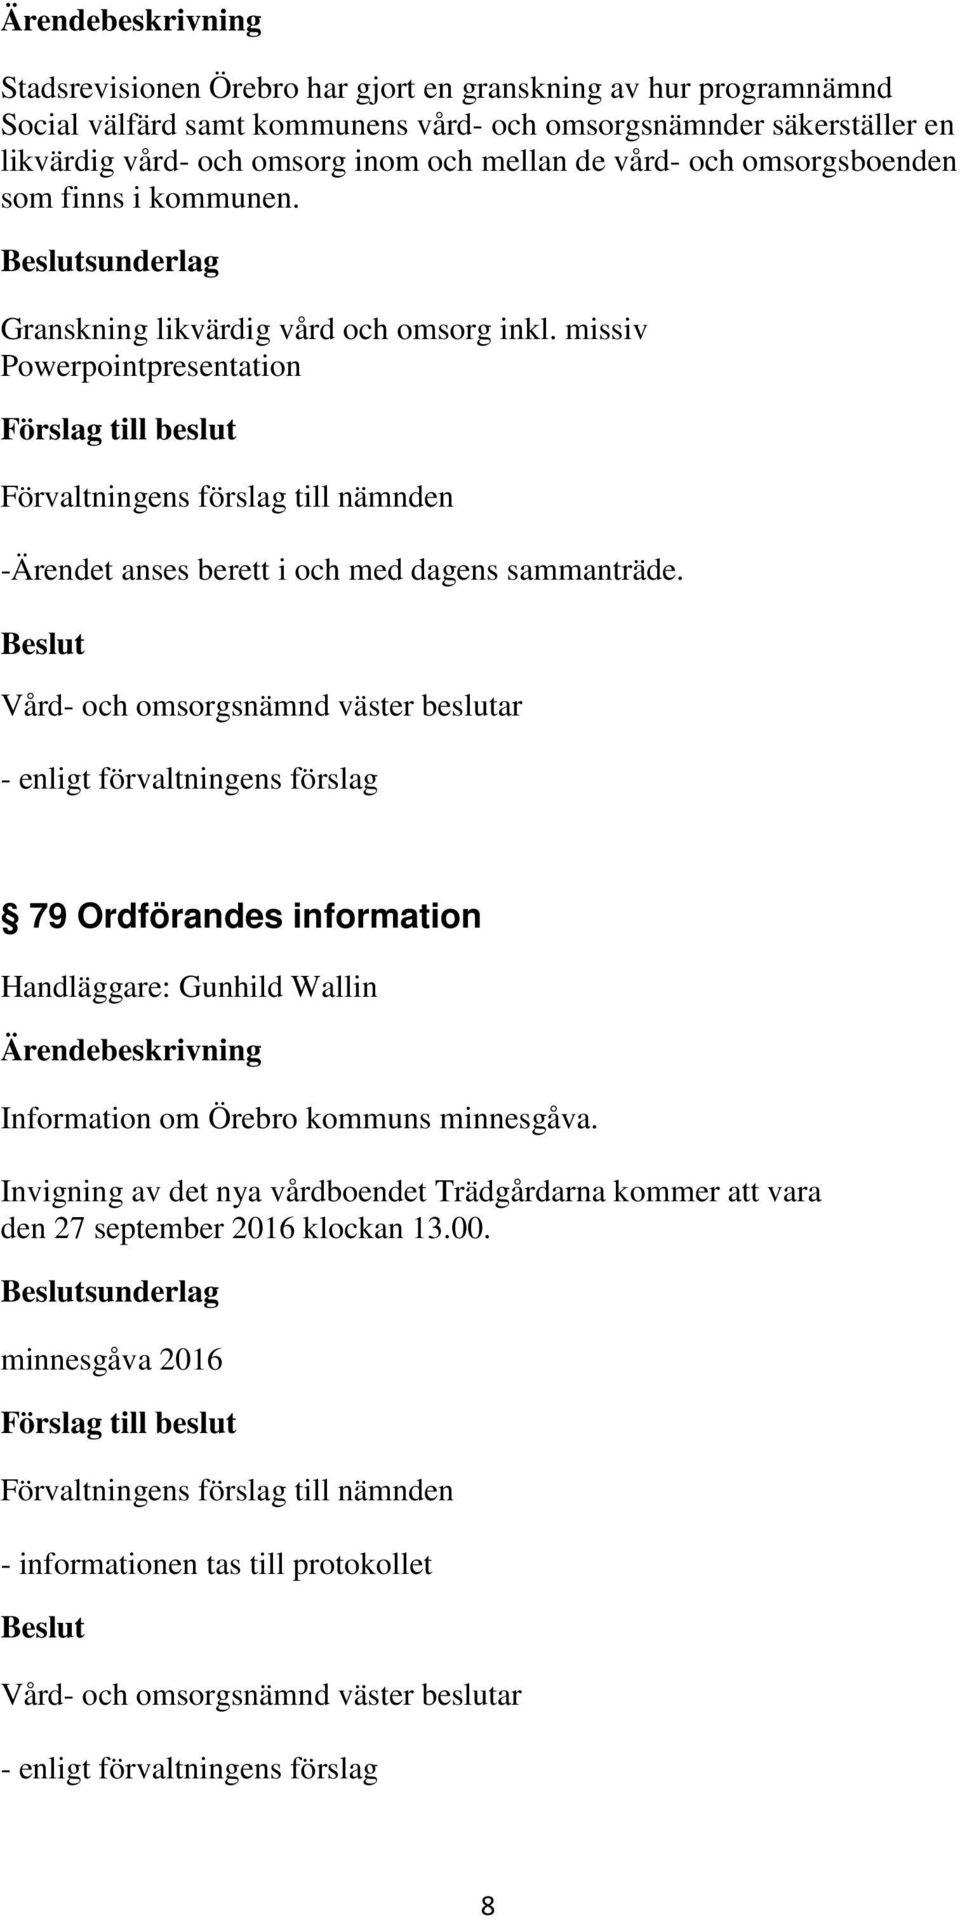 missiv Powerpointpresentation -Ärendet anses berett i och med dagens sammanträde. 79 Ordförandes information Information om Örebro kommuns minnesgåva.